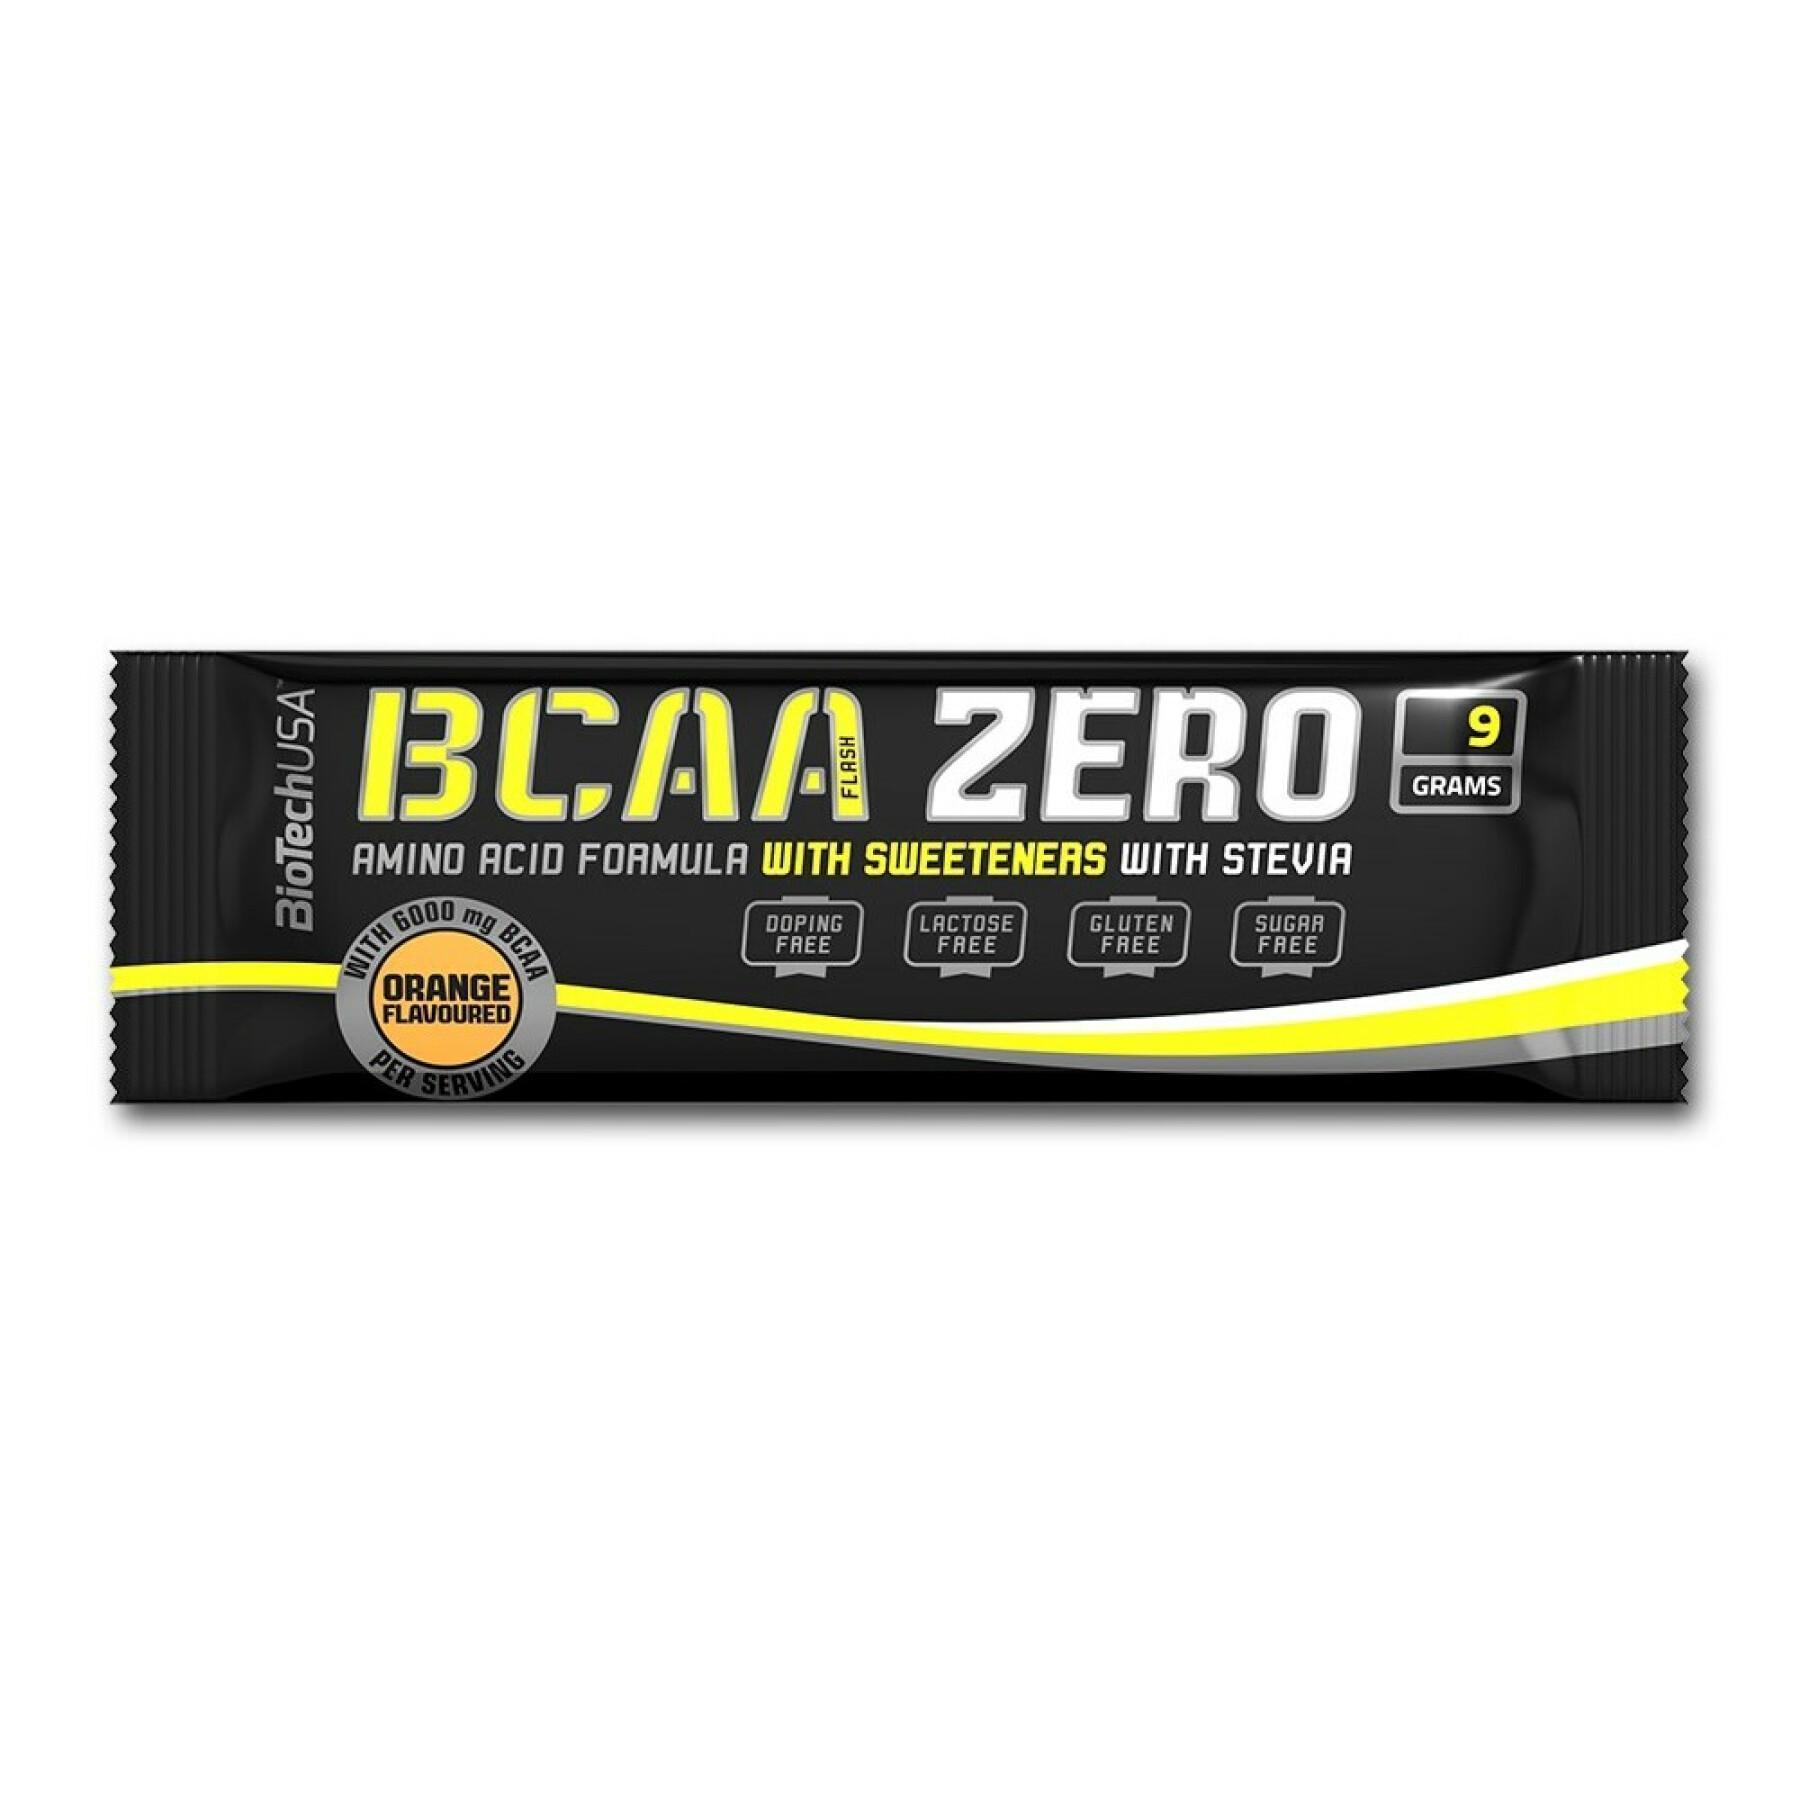 50 pakjes aminozuren Biotech USA bcaa zero - Pasteque - 9g